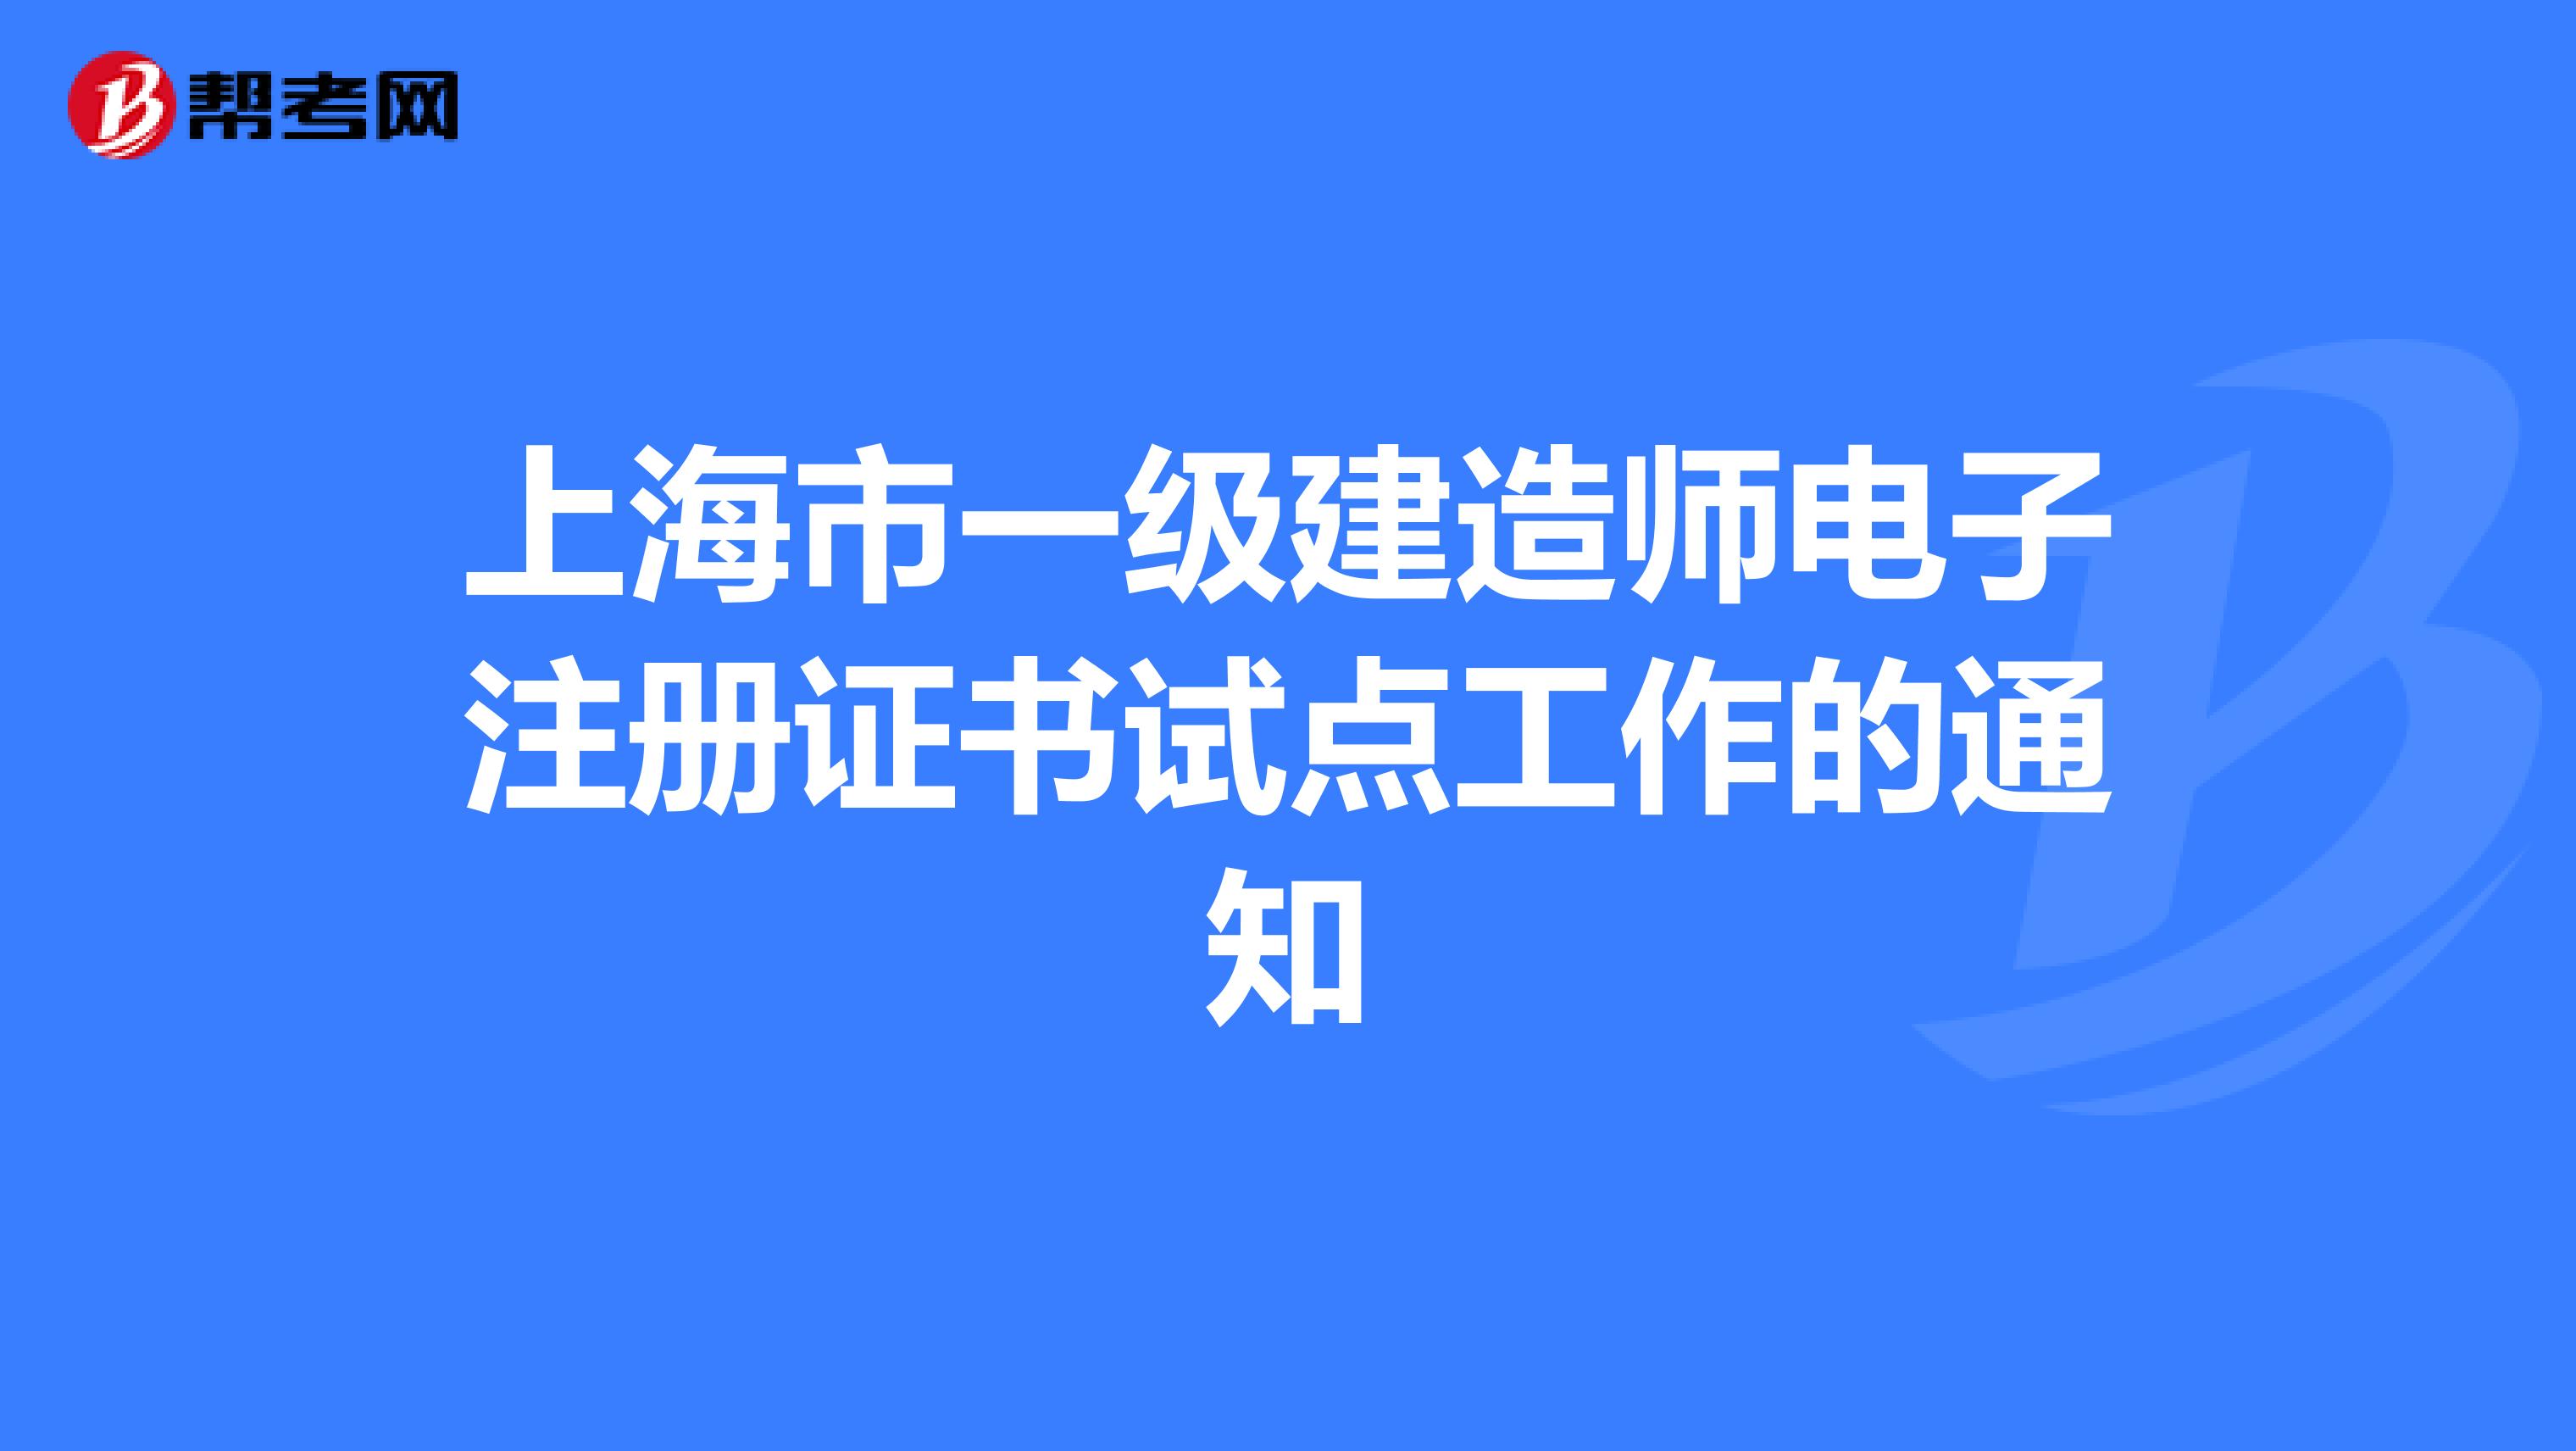 上海市一级建造师电子注册证书试点工作的通知